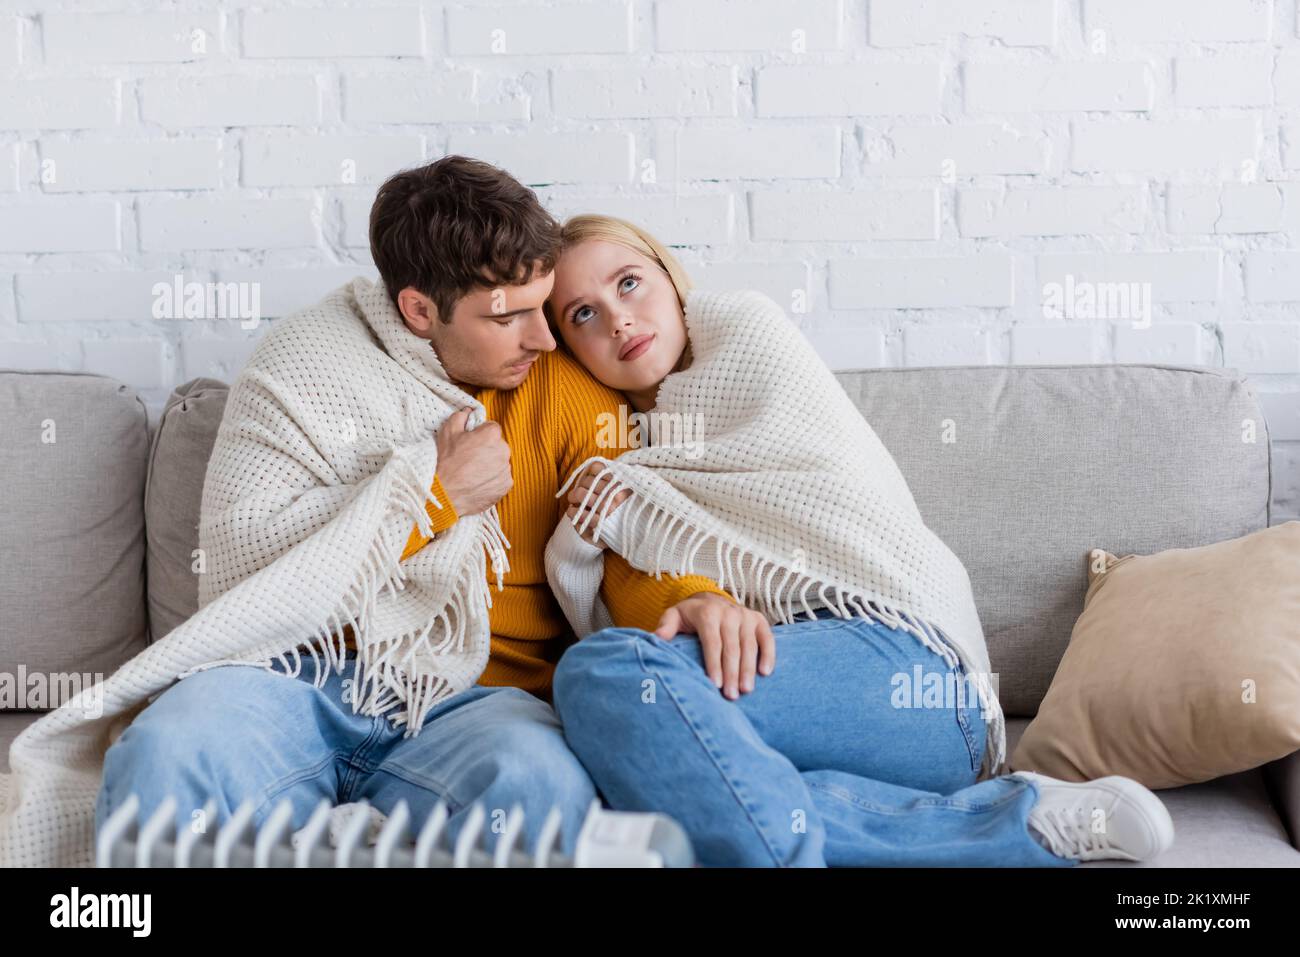 Junges Paar mit Decke bedeckt, das auf der Couch sitzt und sich in der Nähe des modernen Heizkörperheizkörpers wärmt, Stockbild Stockfoto